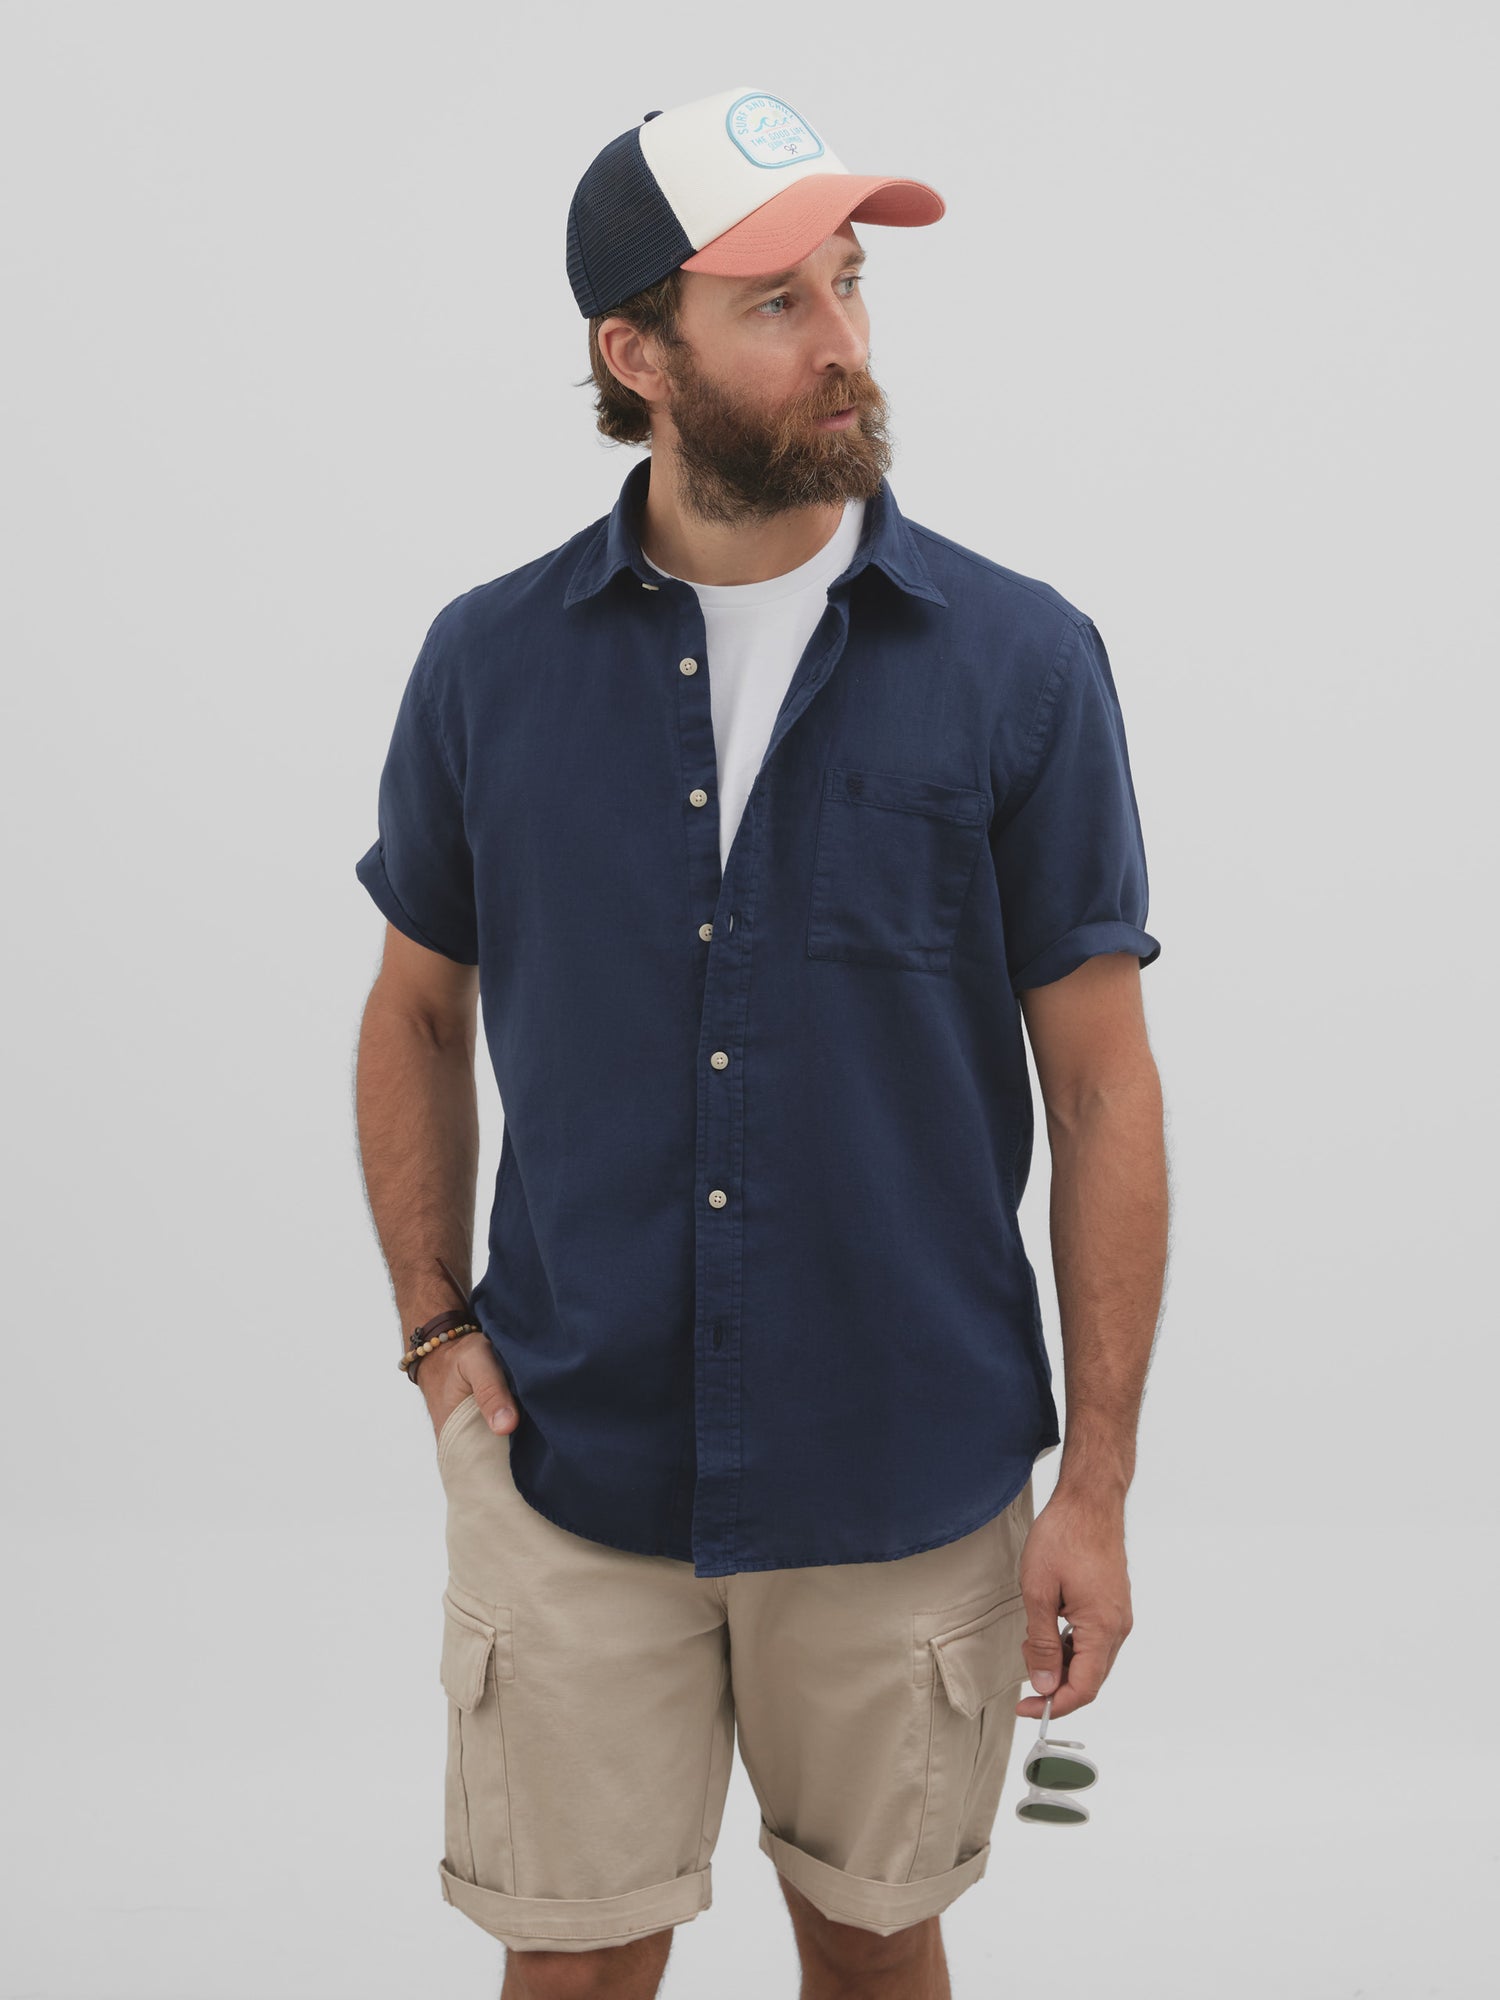 Navy blue short sleeve linen sport shirt